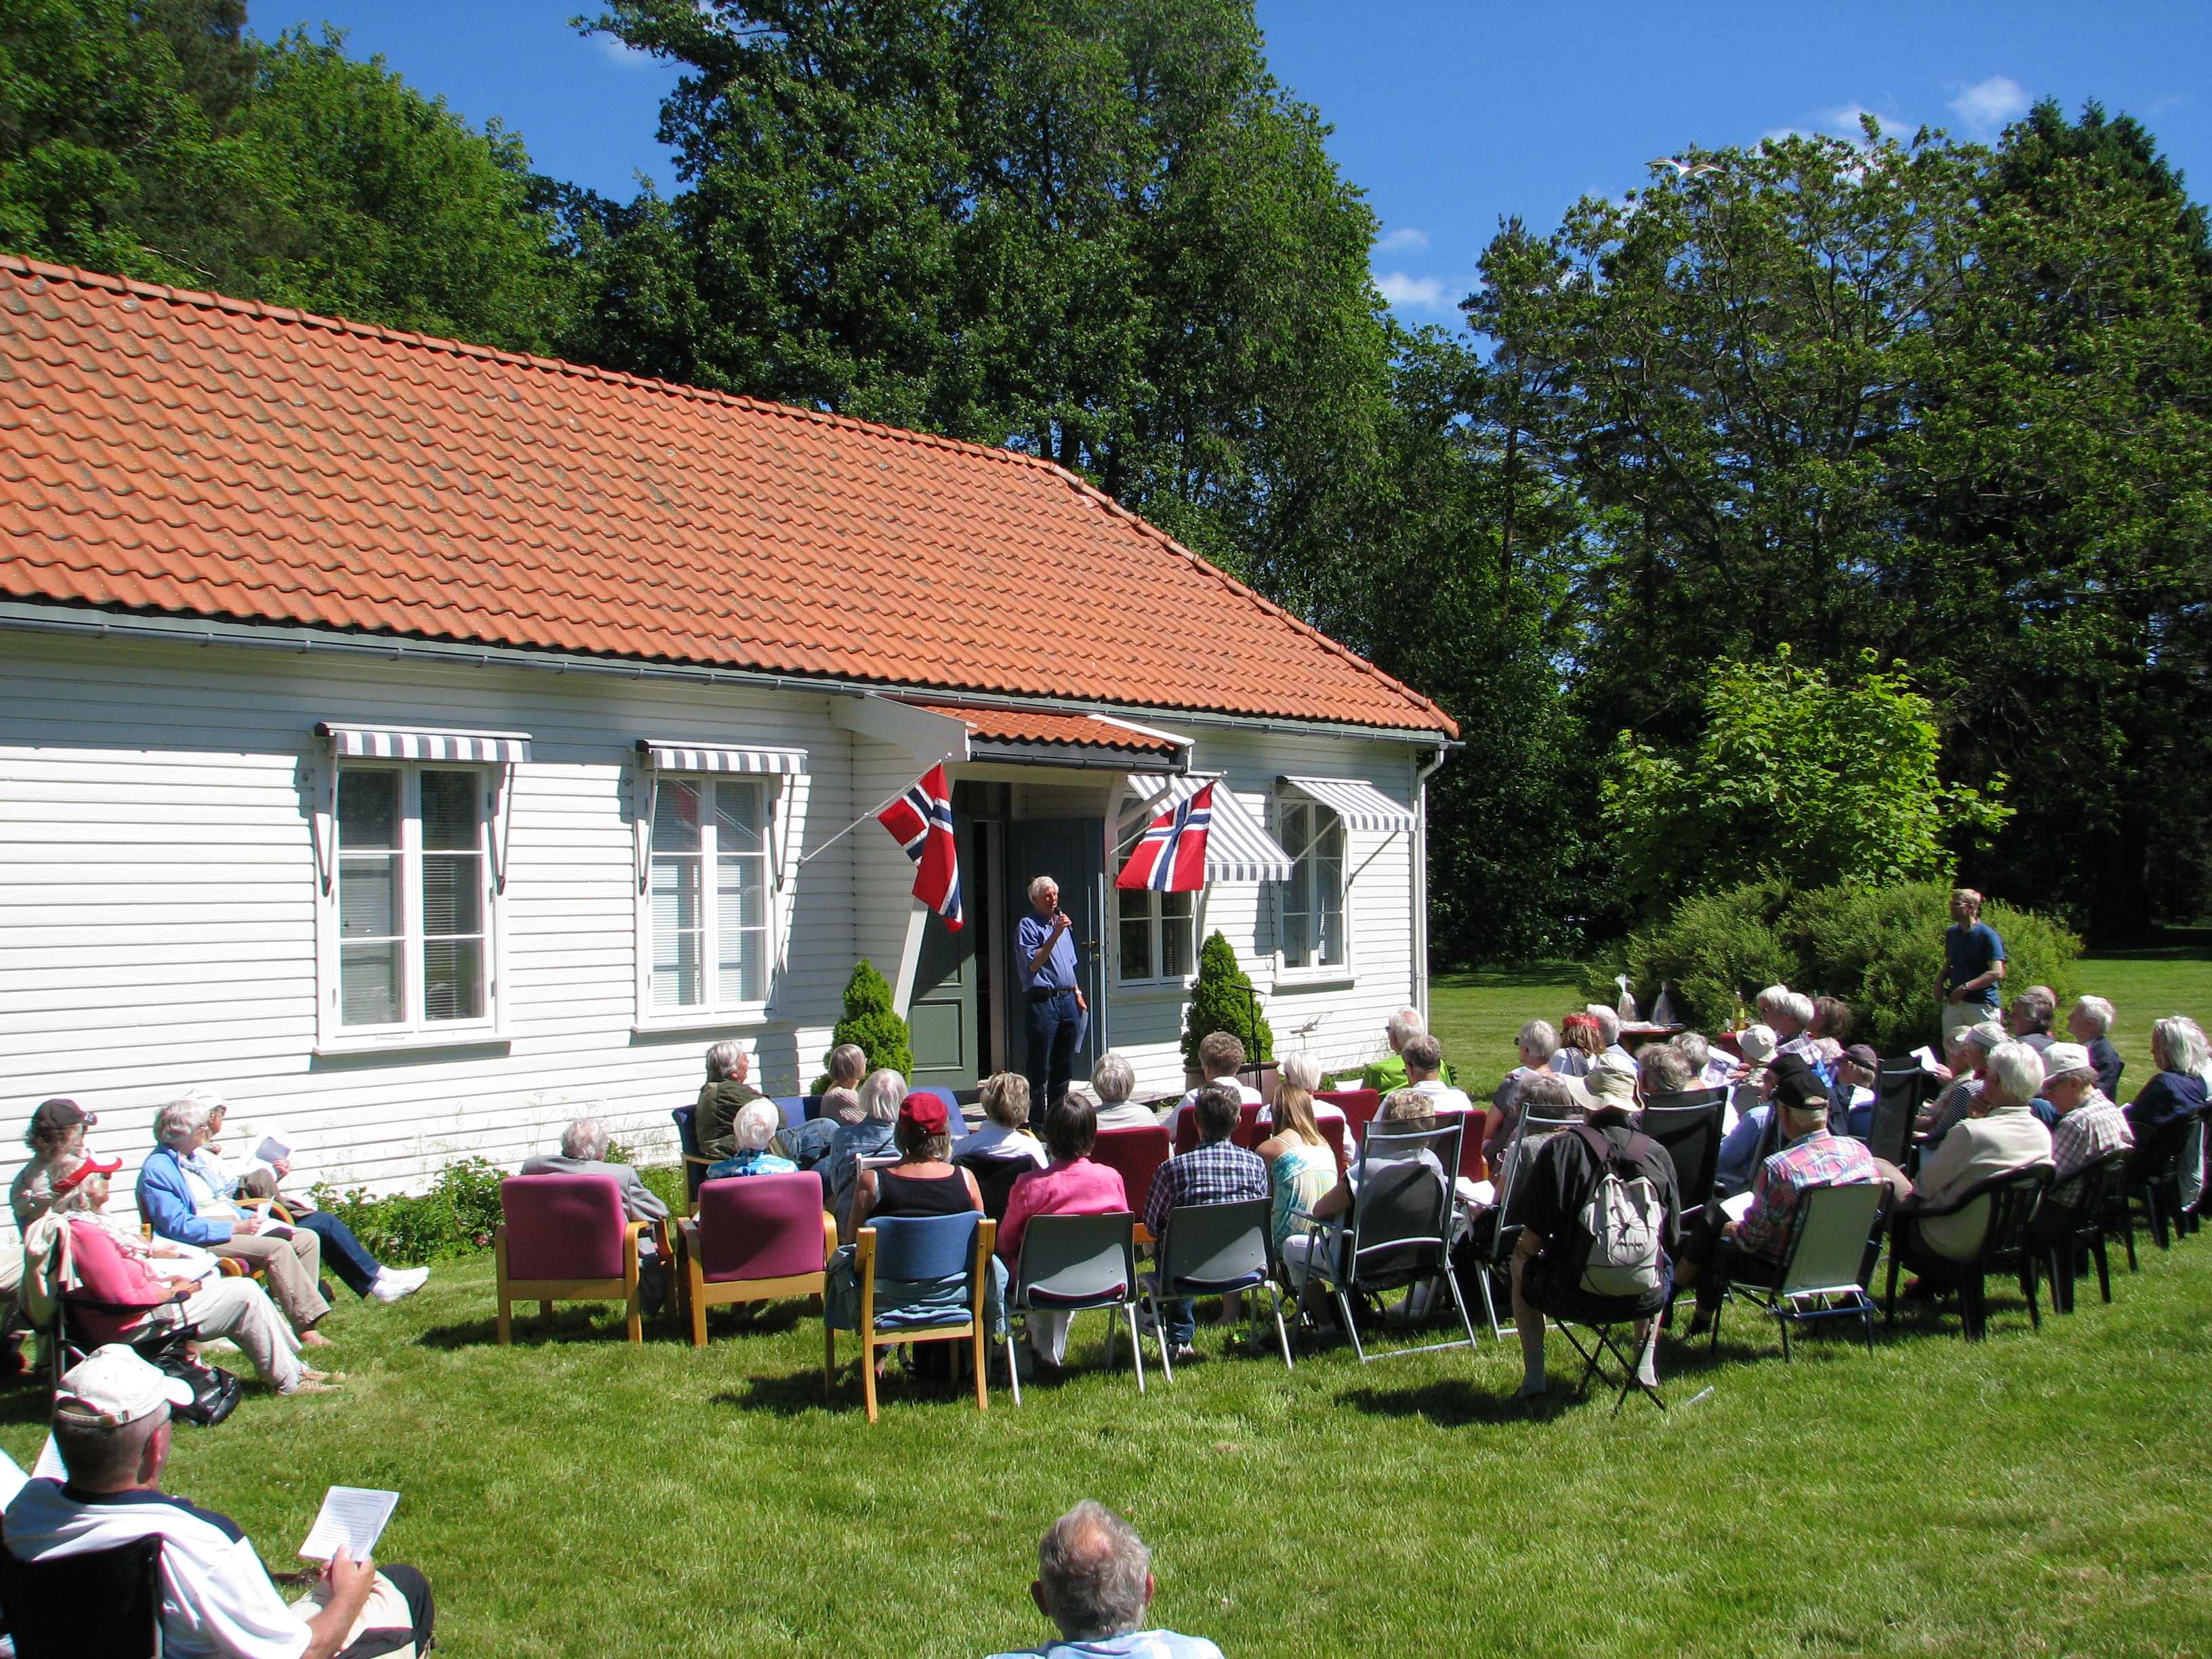 General Oscars Wergelands hus på Gimlemoen - Agderkulturs lokaler